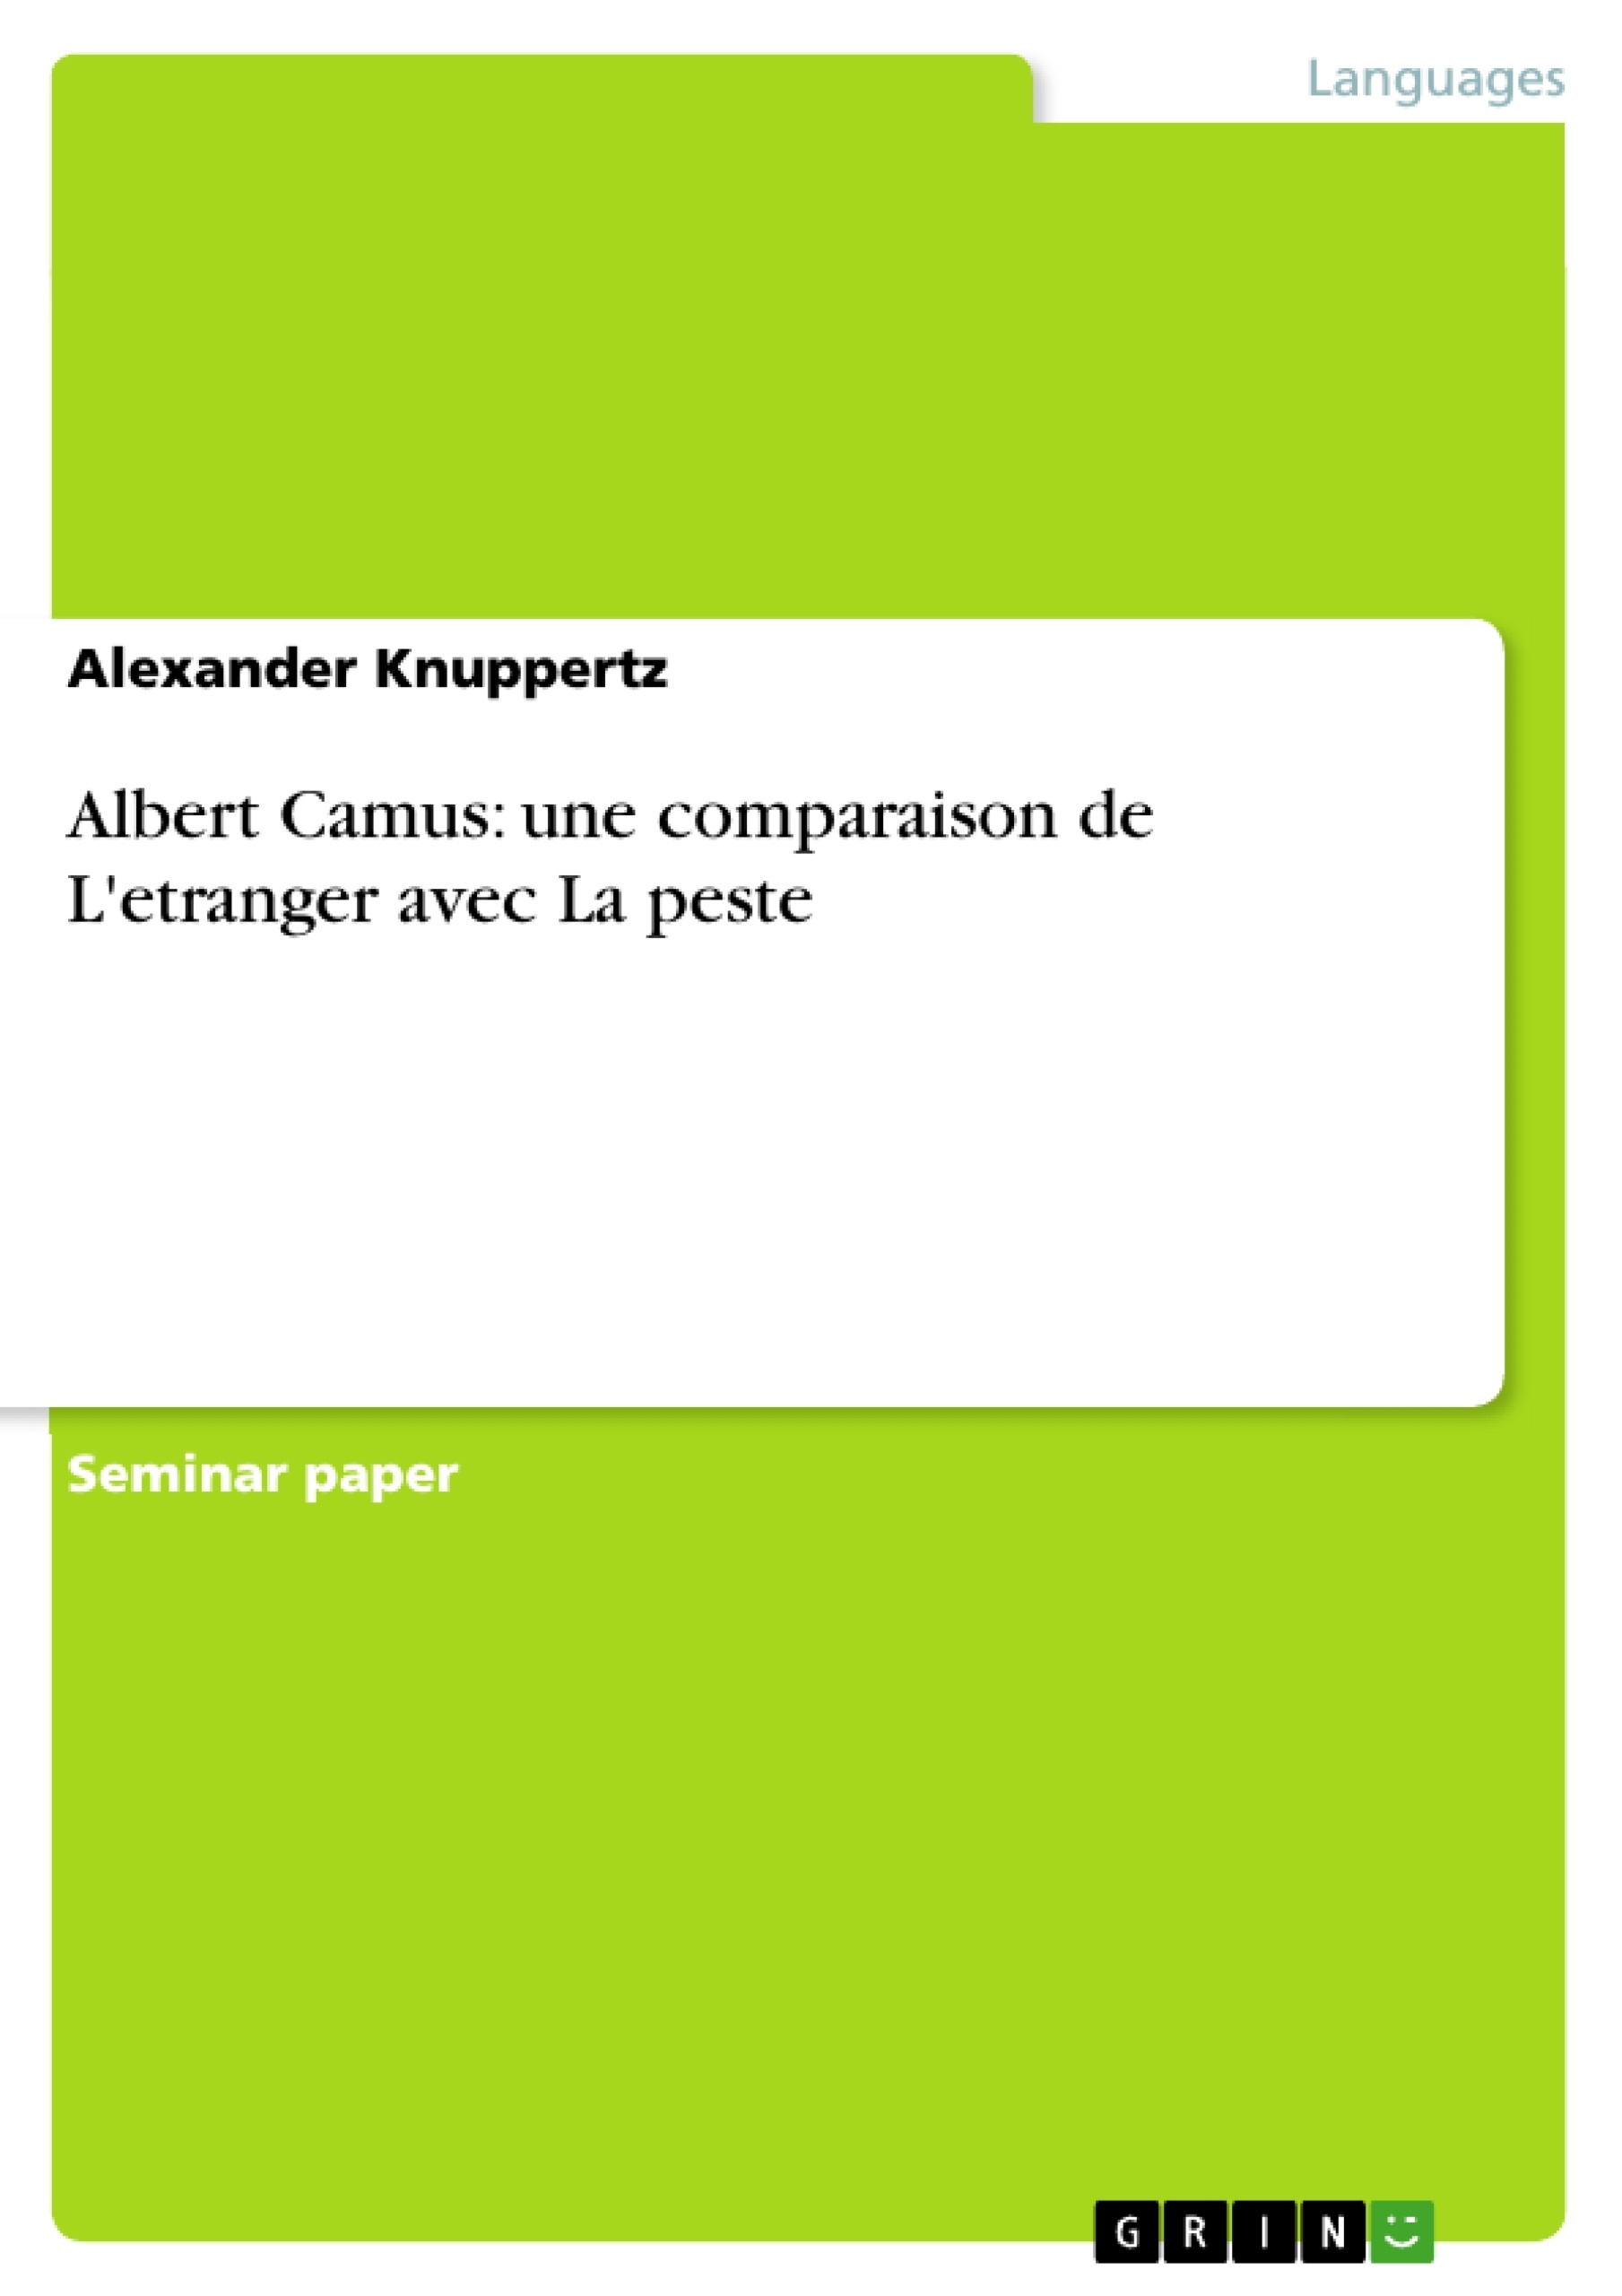 Title: Albert Camus: une comparaison de L'etranger avec La peste